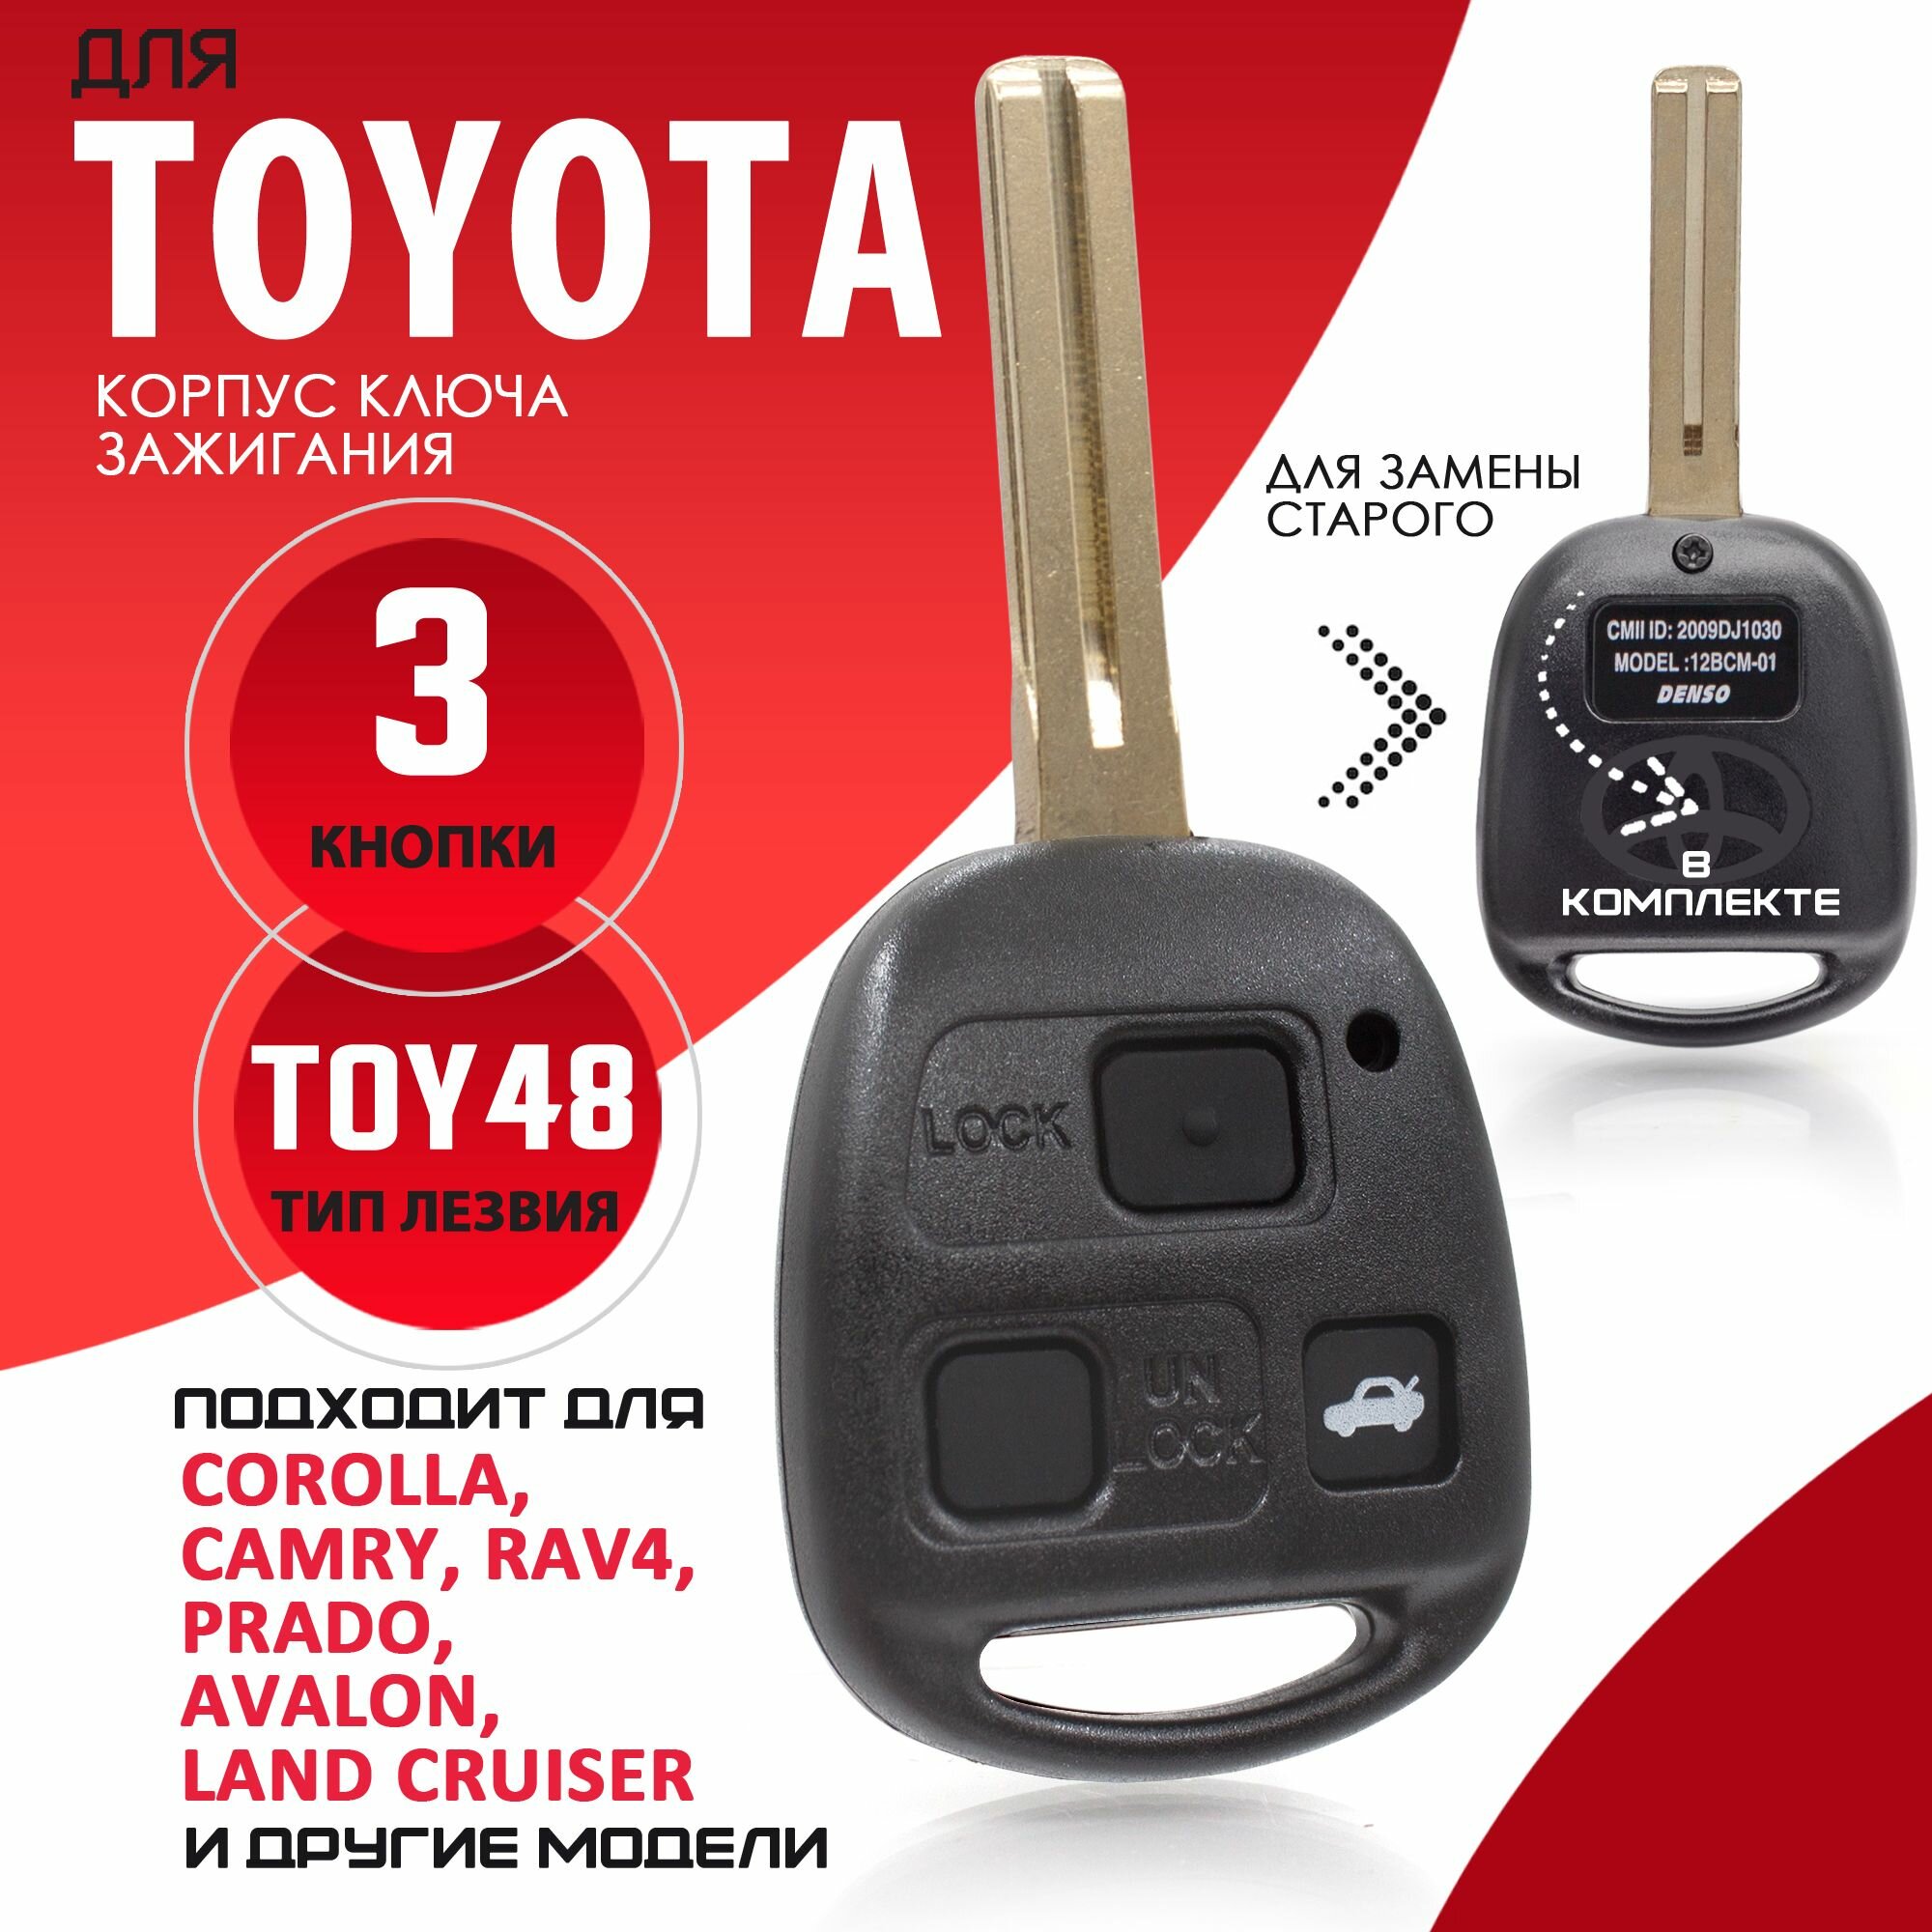 Корпус ключа зажигания для Toyota Тойота - 1 штука (3х кнопочный ключ лезвие TOY48 длина лезвия 40 мм) Брелок автомобильный